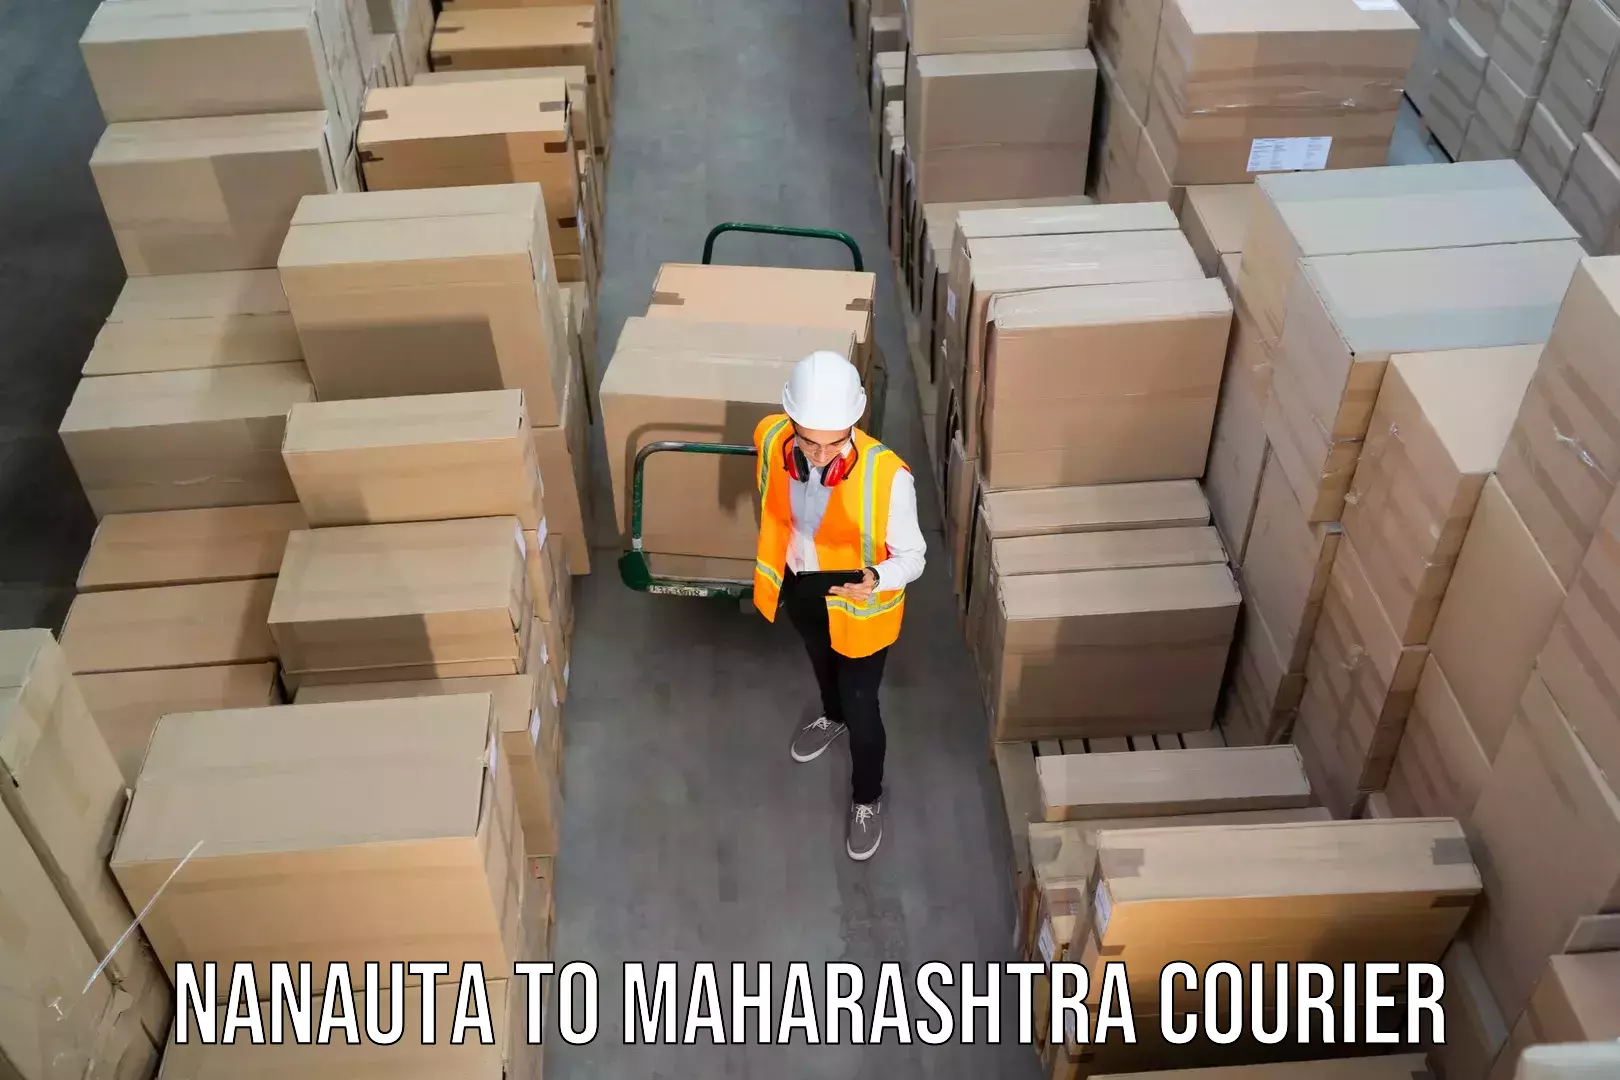 Courier services Nanauta to Jintur